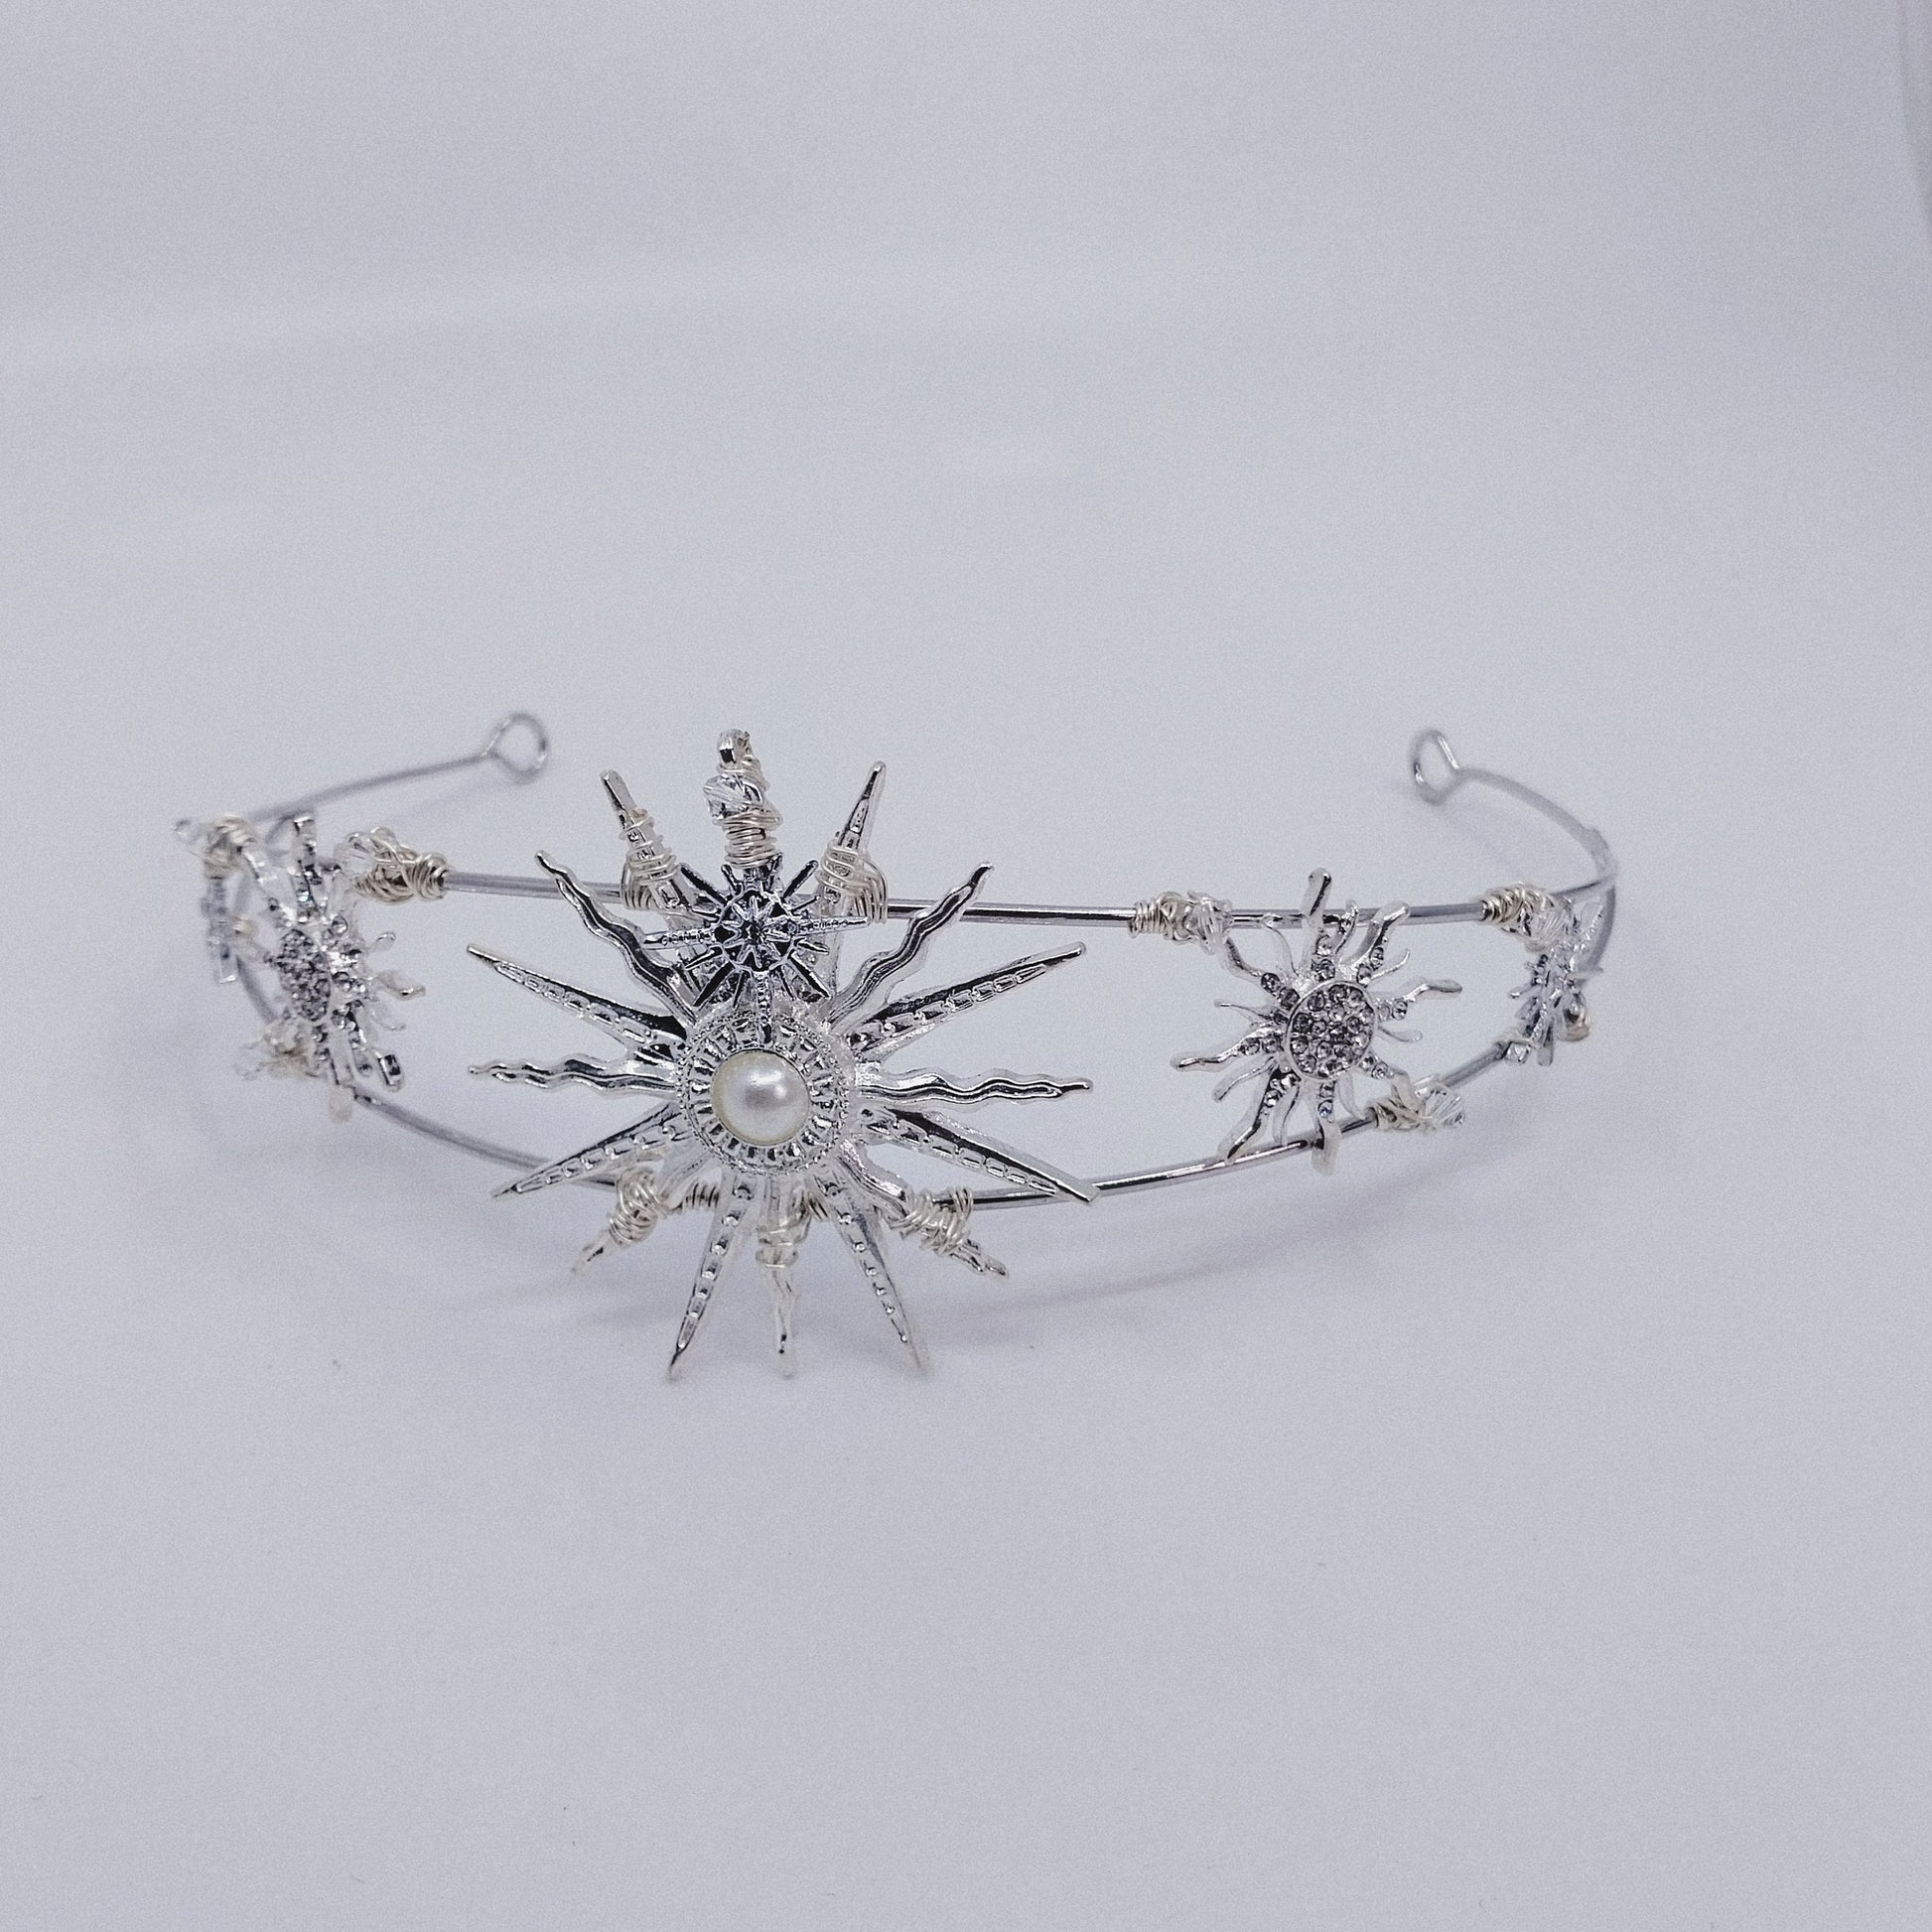 SOLEIL Tiara handmade celestial hair accessories moon and star headpiece Australia